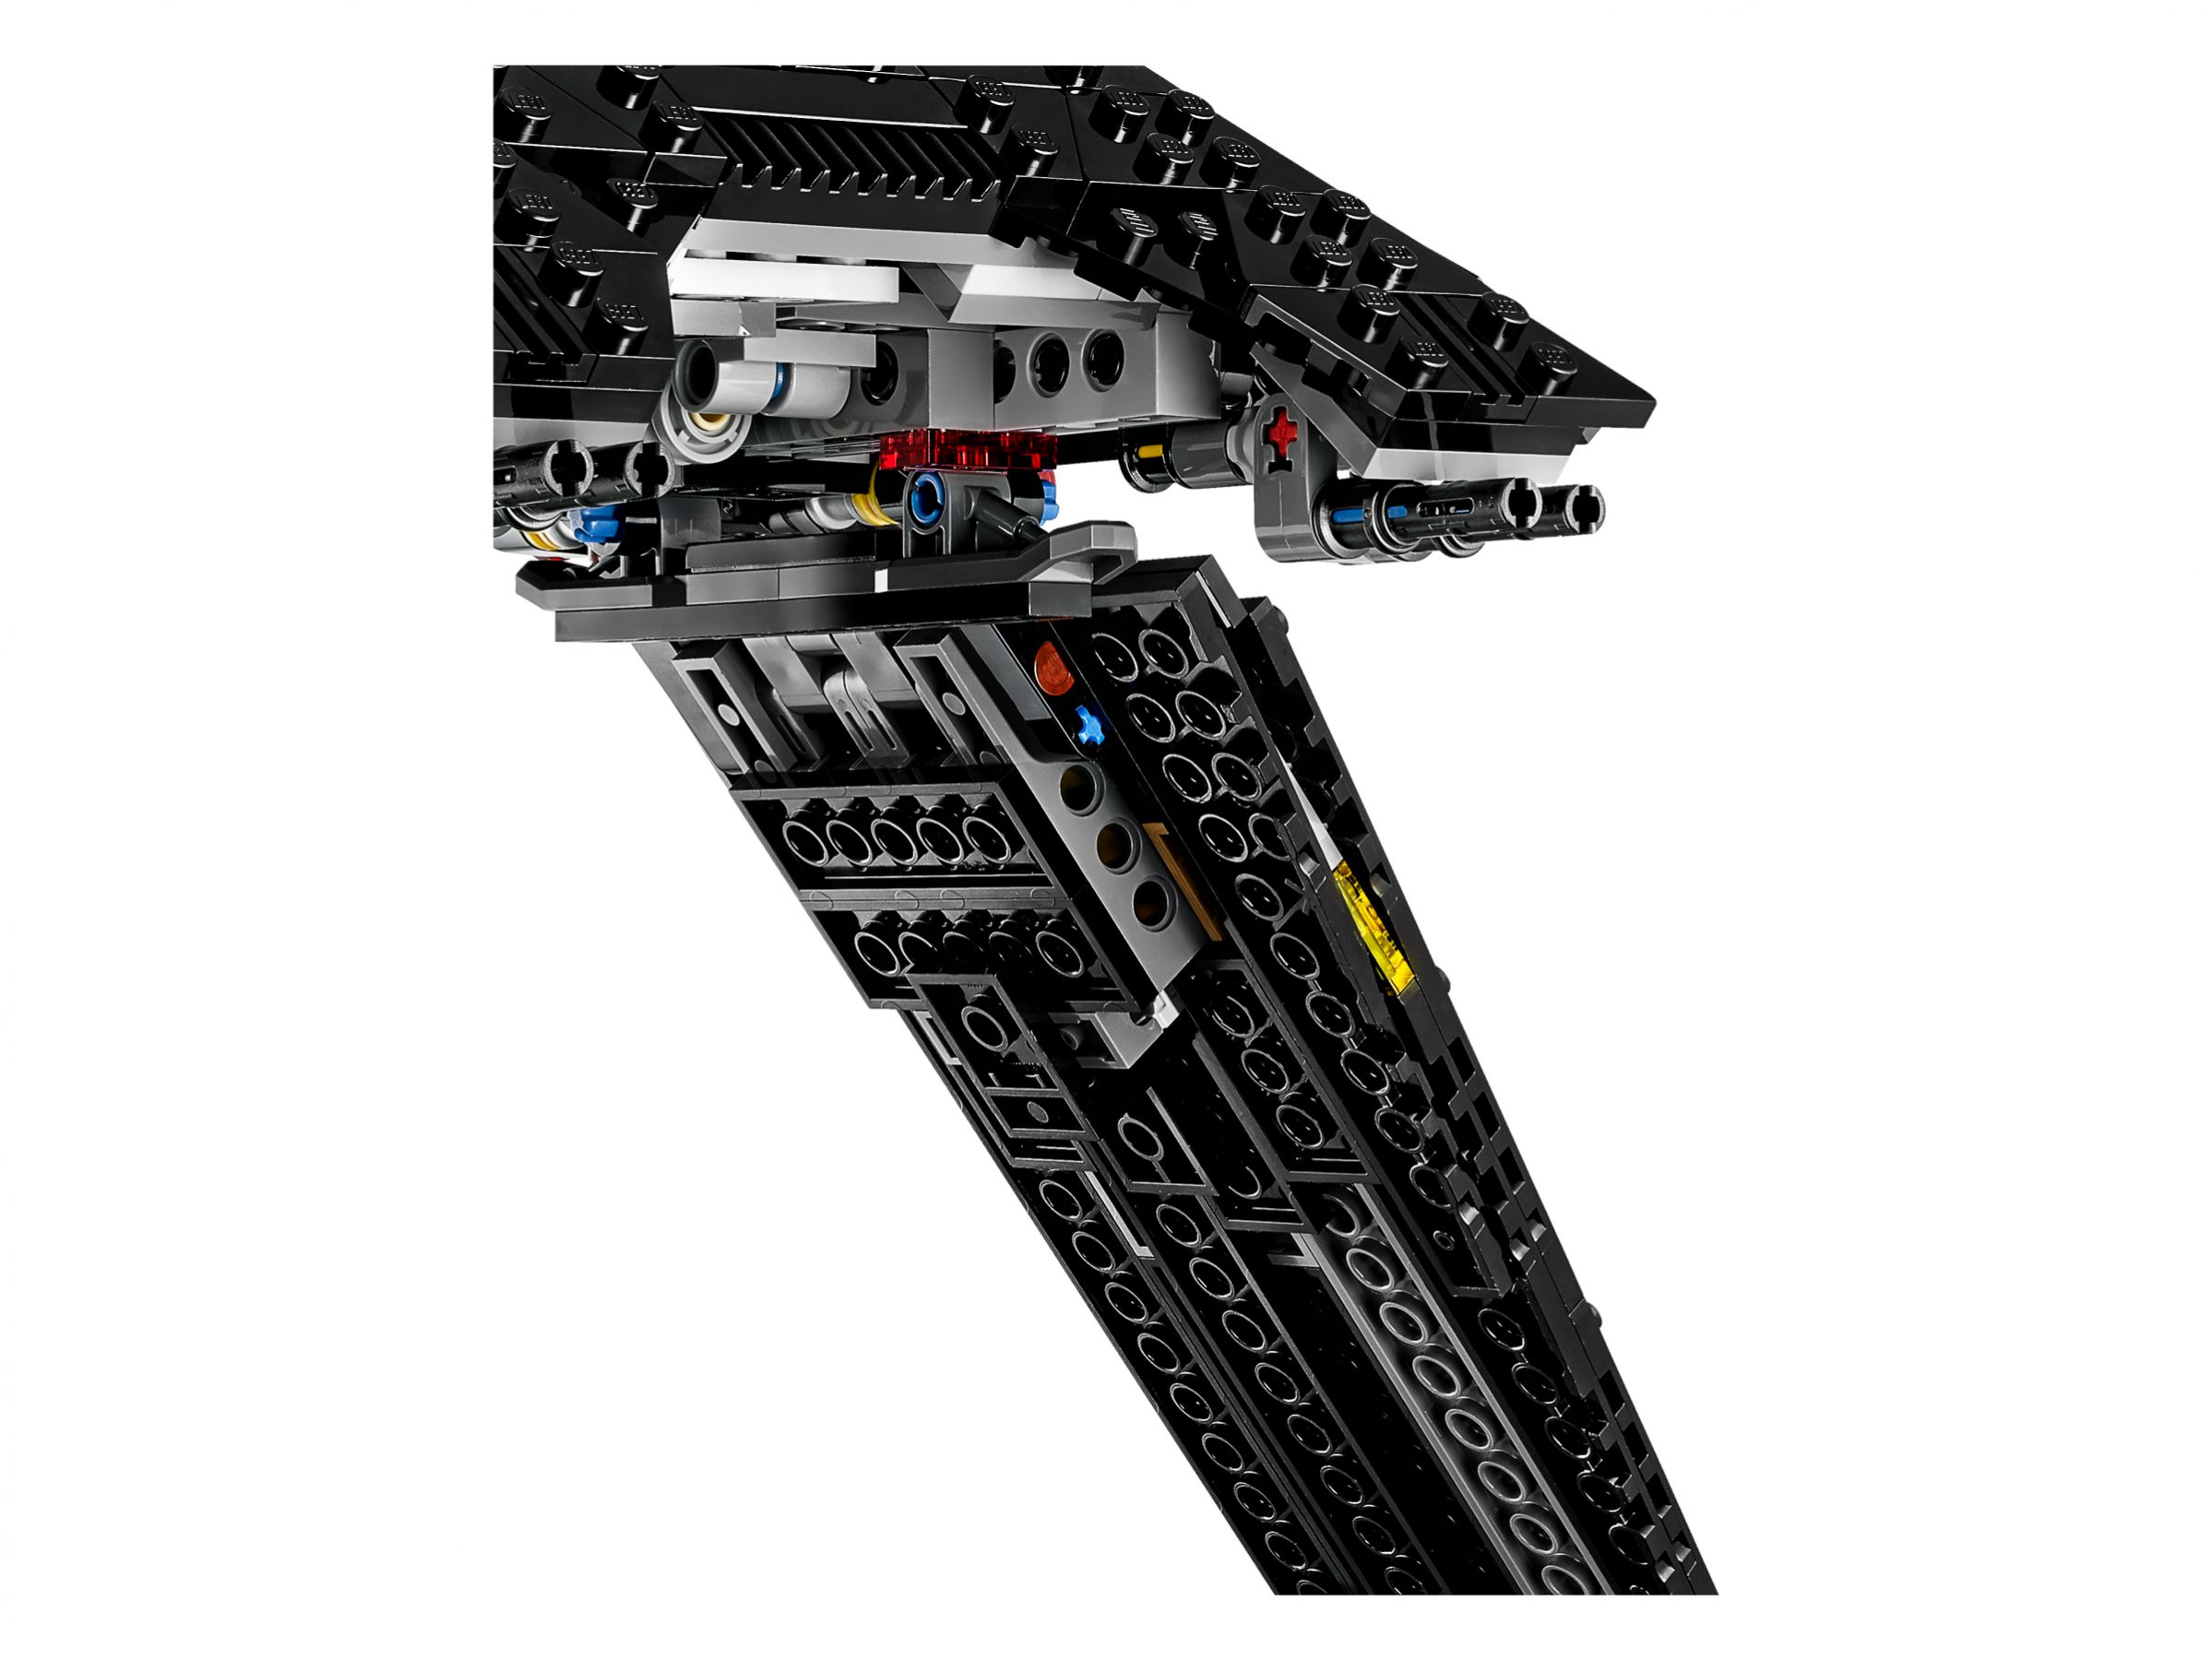 LEGO Star Wars 75156 Krennics Imperial Shuttle LEGO_75156_alt9.jpg